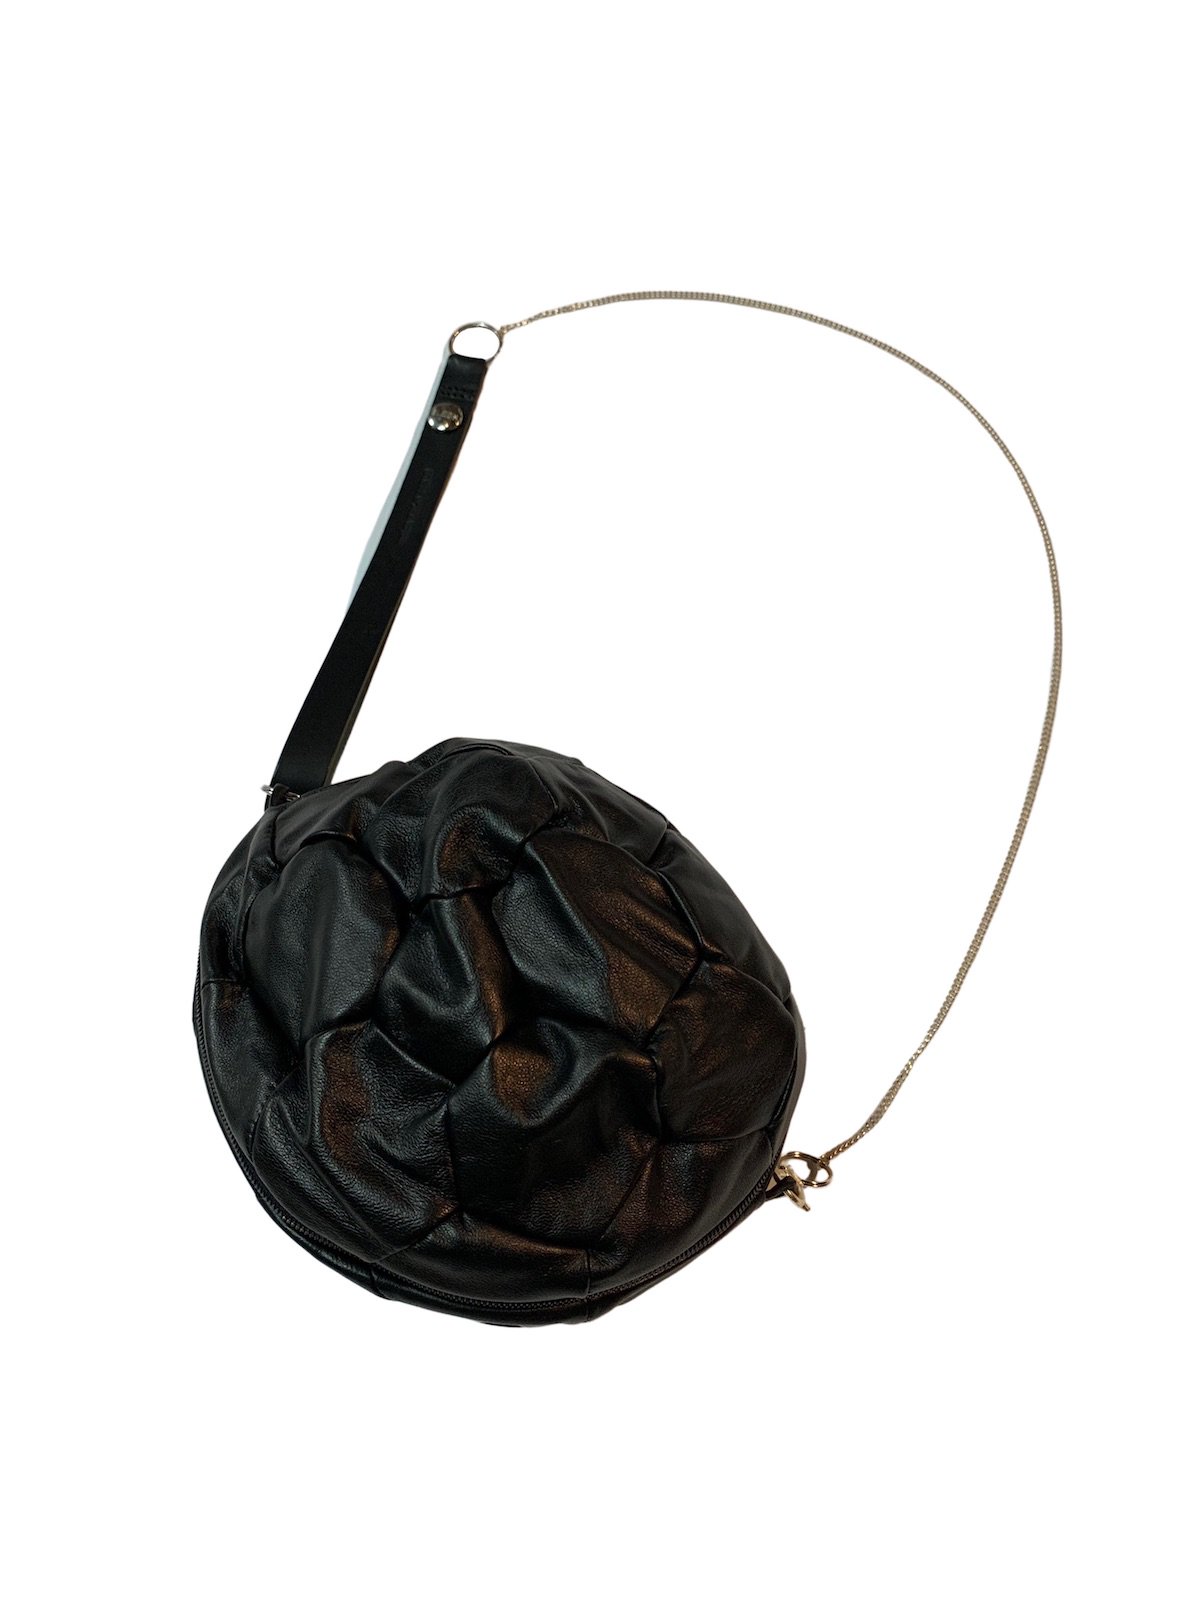 値下げ BLESS N° Footballbag Leather ブラック | hartwellspremium.com